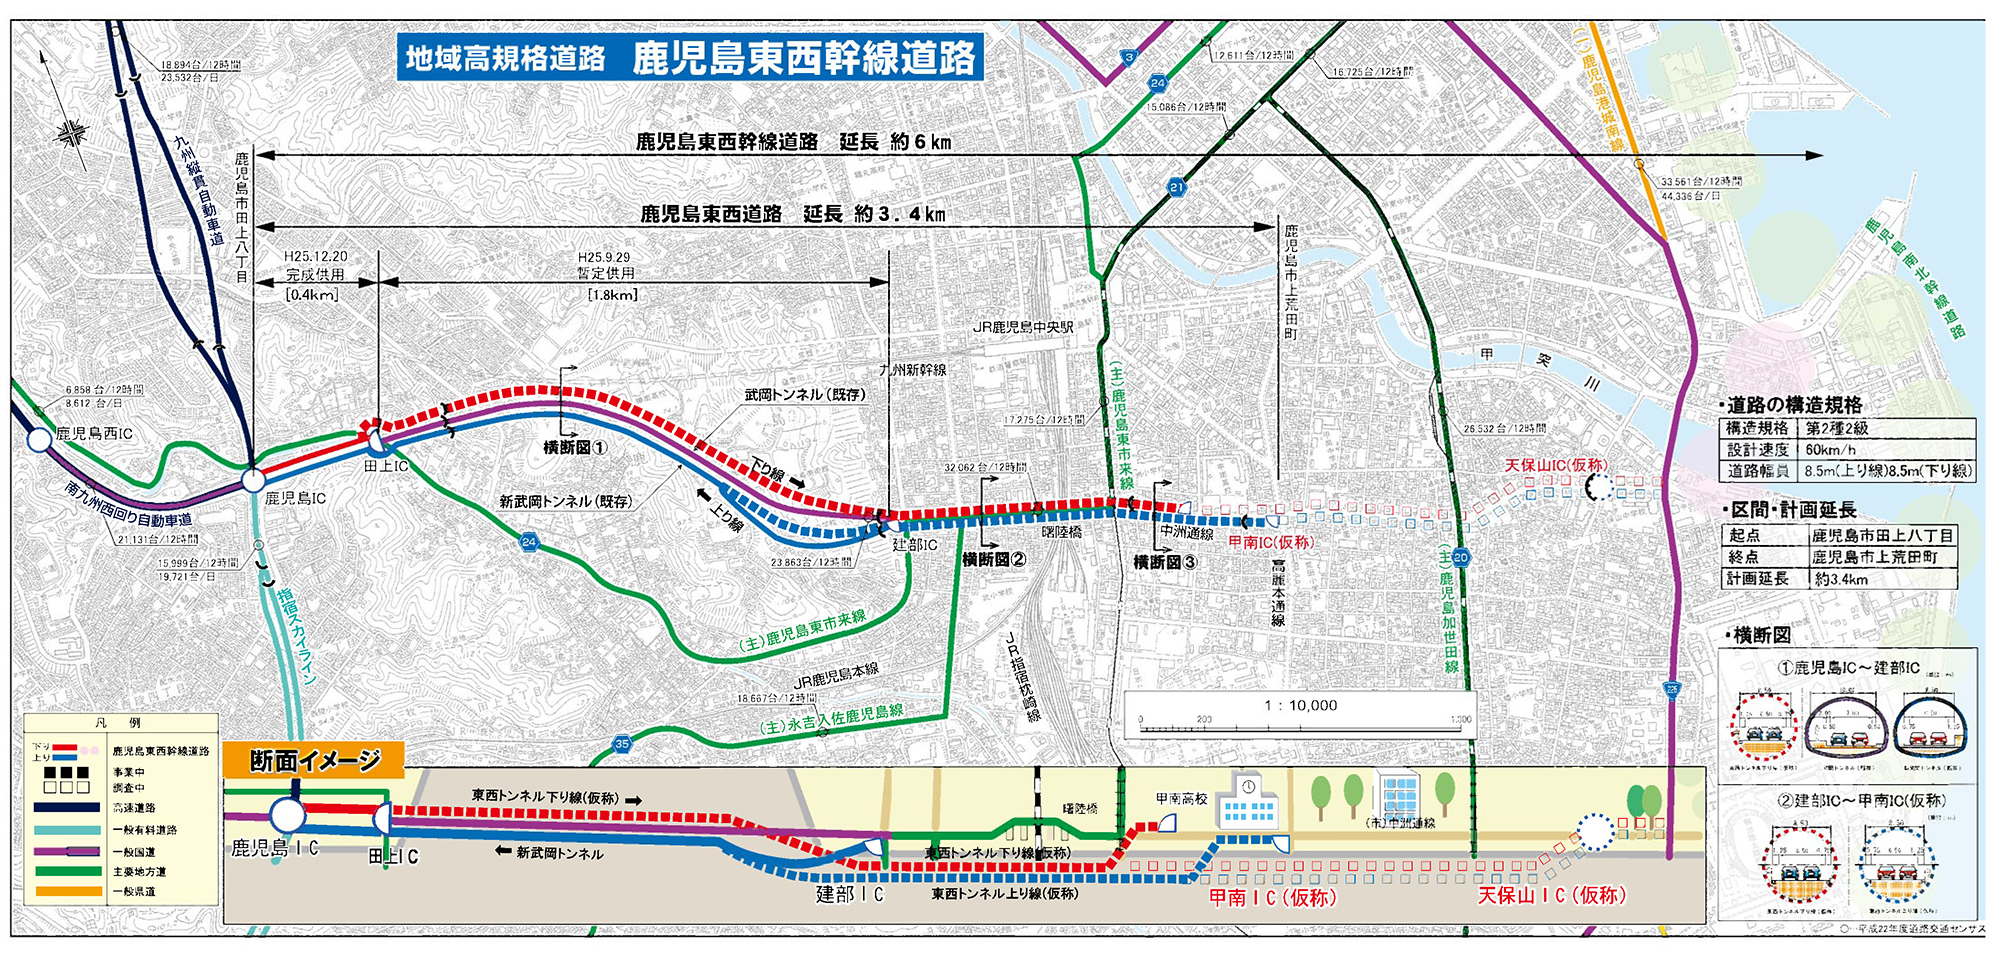 九州地方整備局 東九州道などの幹線道路整備が進捗 道路構造物ジャーナルnet